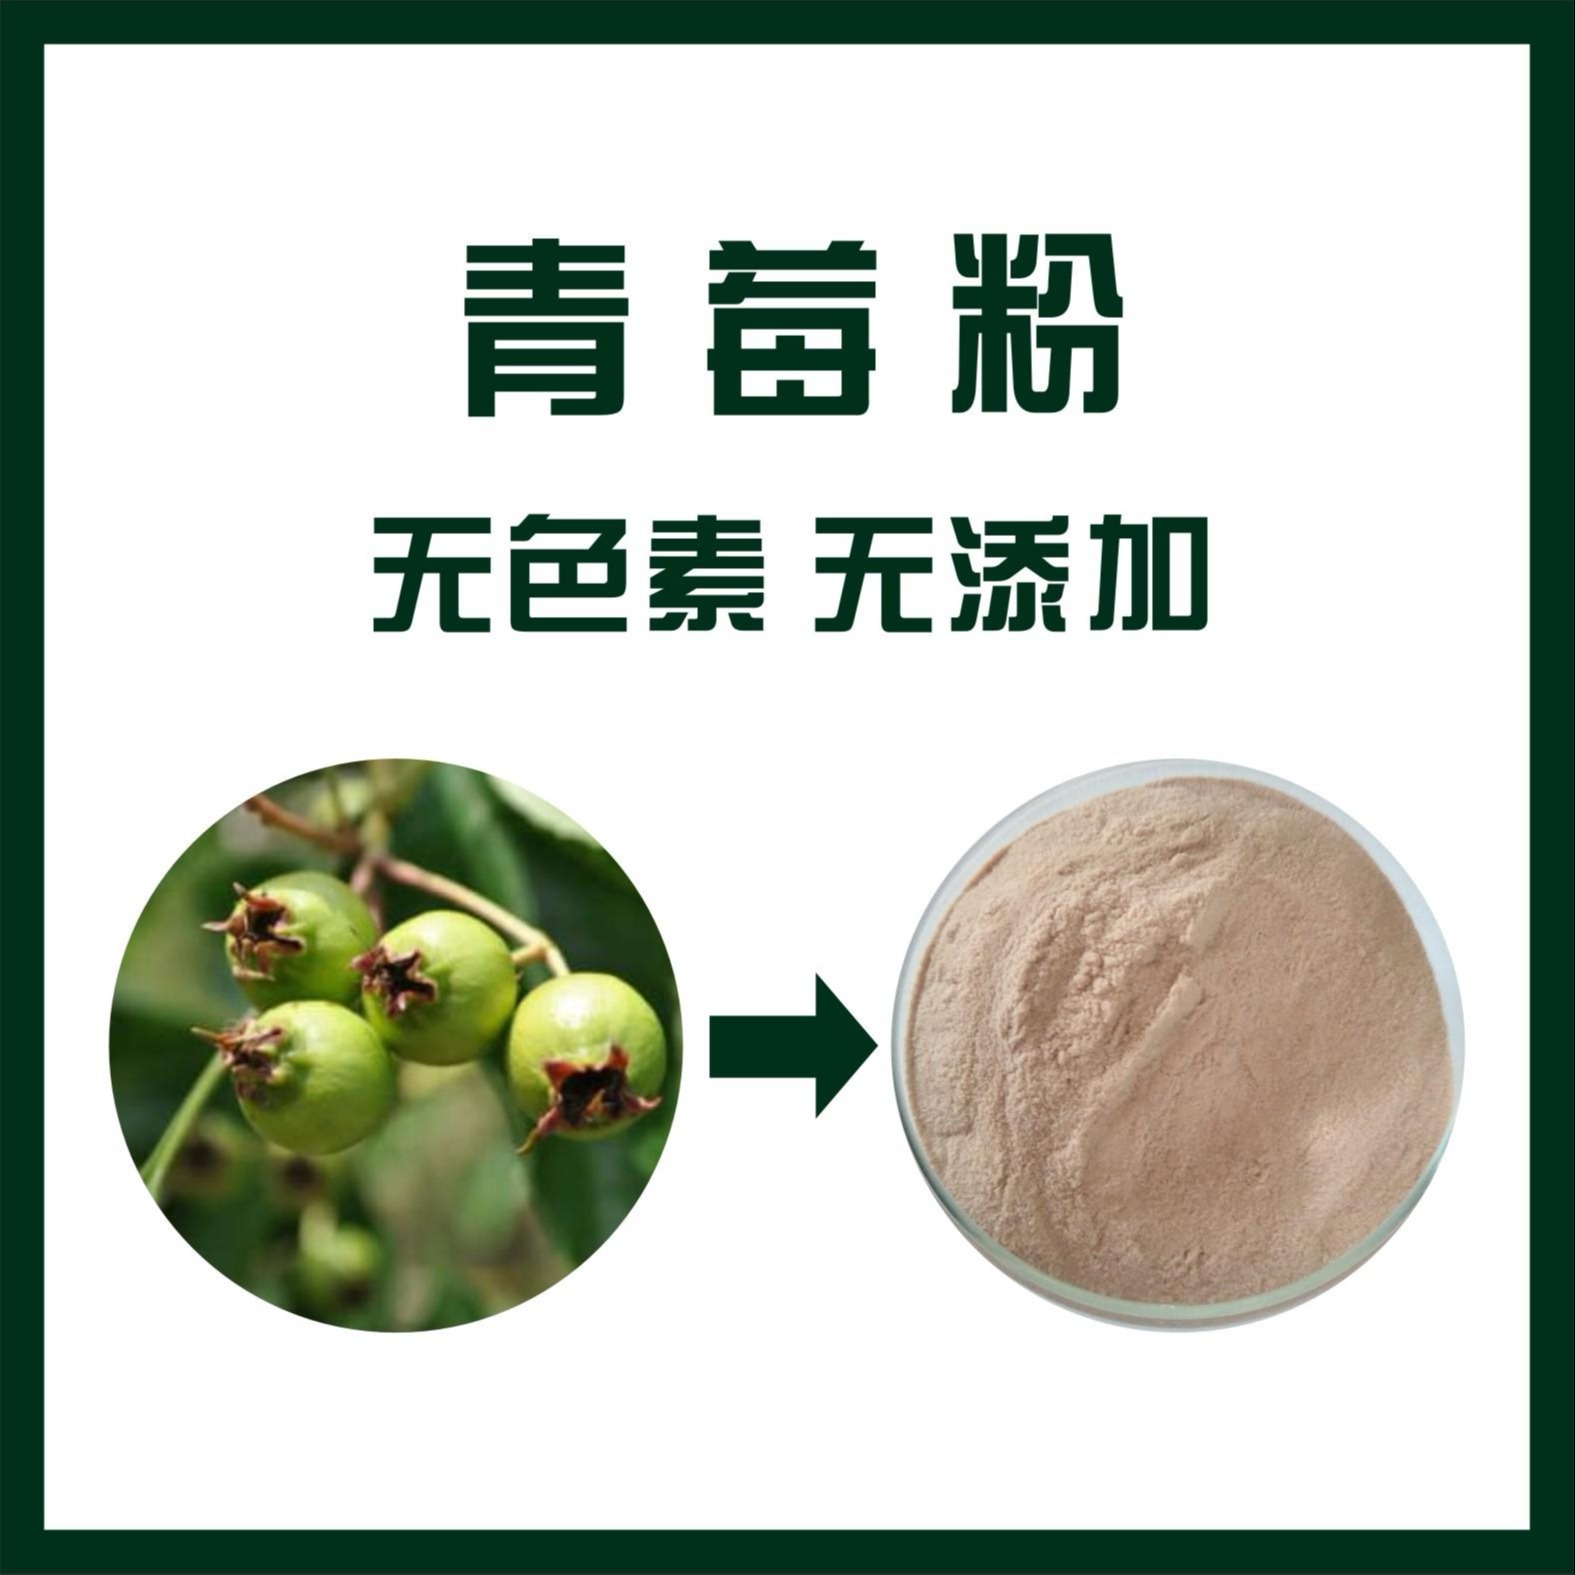 青莓粉,Green berry powder